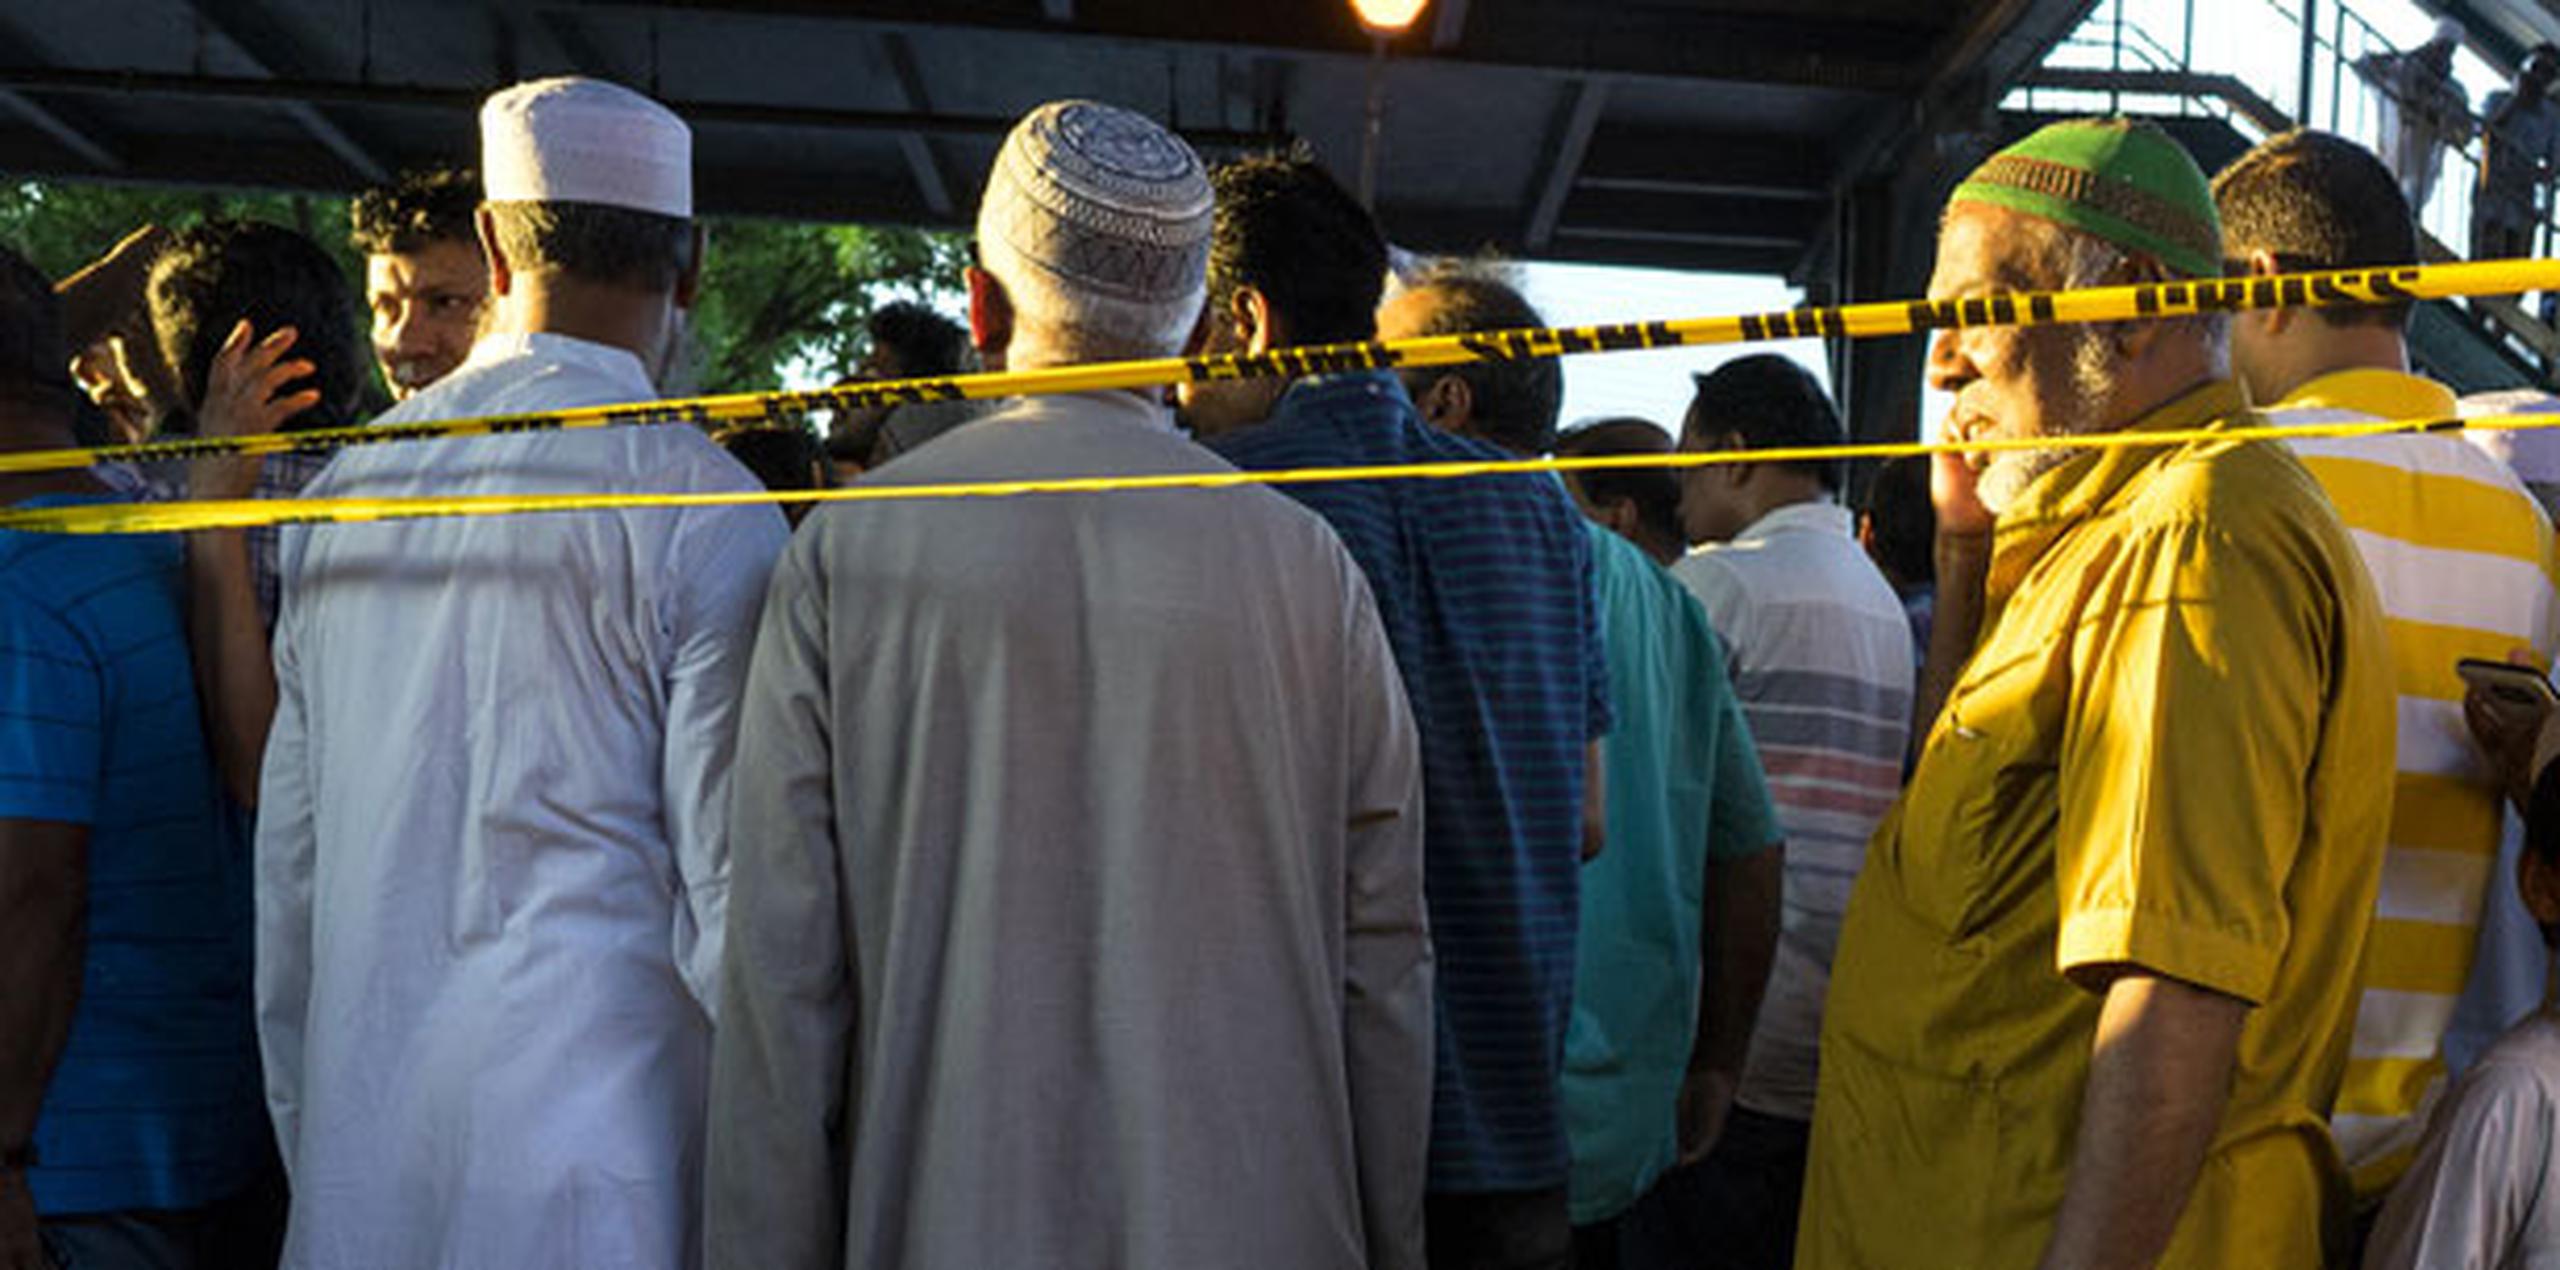 Shahin Chowdhury, creyente que acude a la mezquita, dijo que los miembros de la comunidad habían sentido animosidad a últimas fechas, debido a que personas proferían insultos cuando pasaban por el lugar. (AP Photo/Craig Ruttle)
